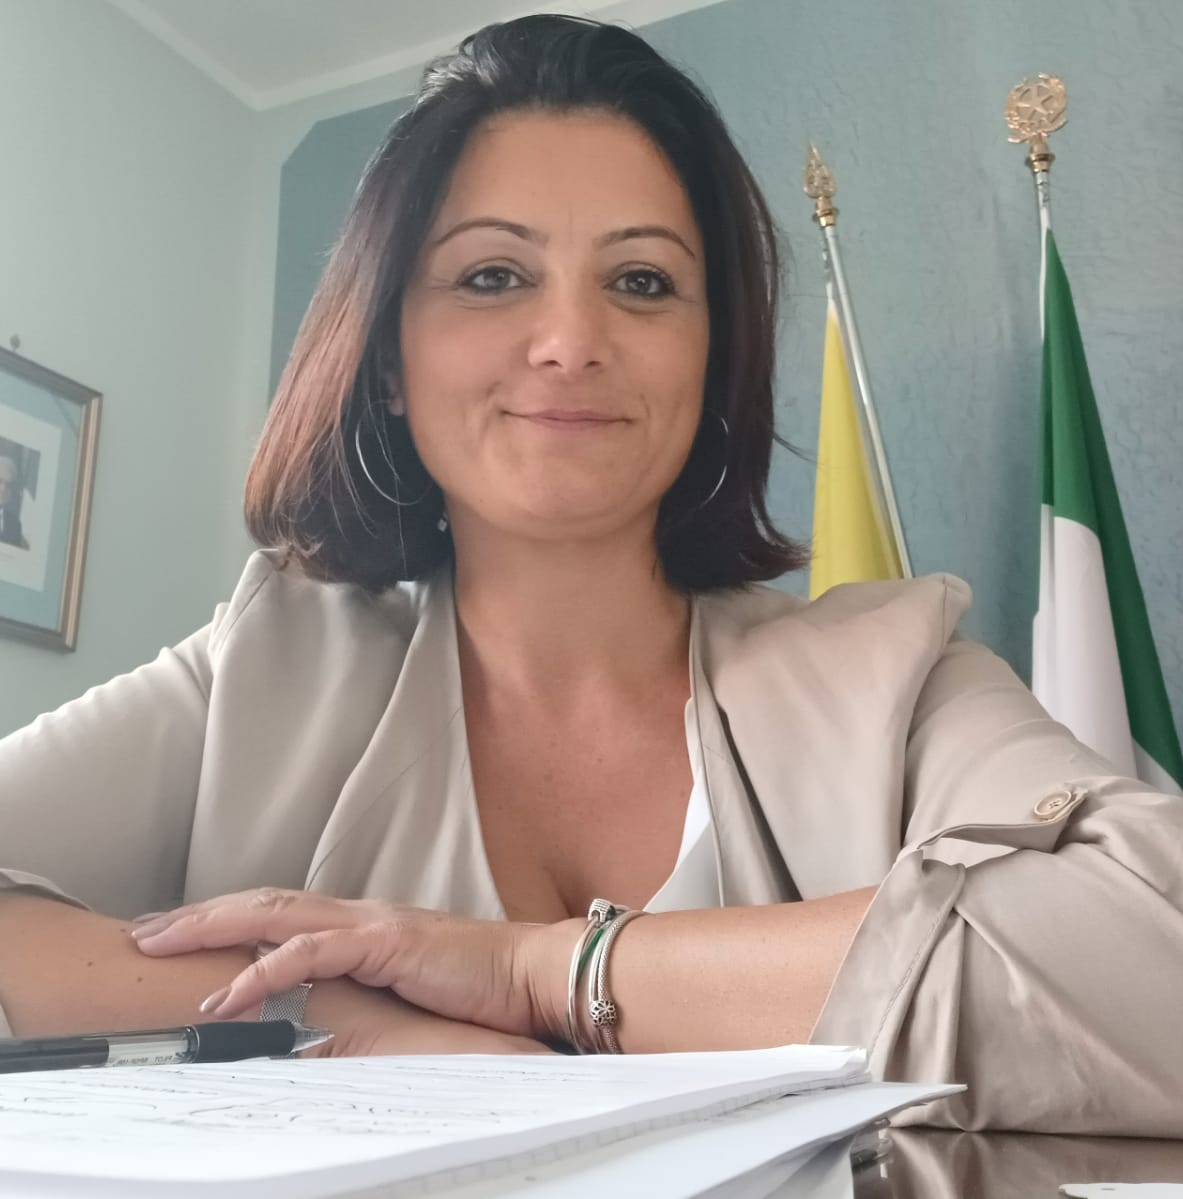 Compostaggio a Sardone, Alfano, sindaco di San Cipriano: tutto deciso nelle segrete stanze